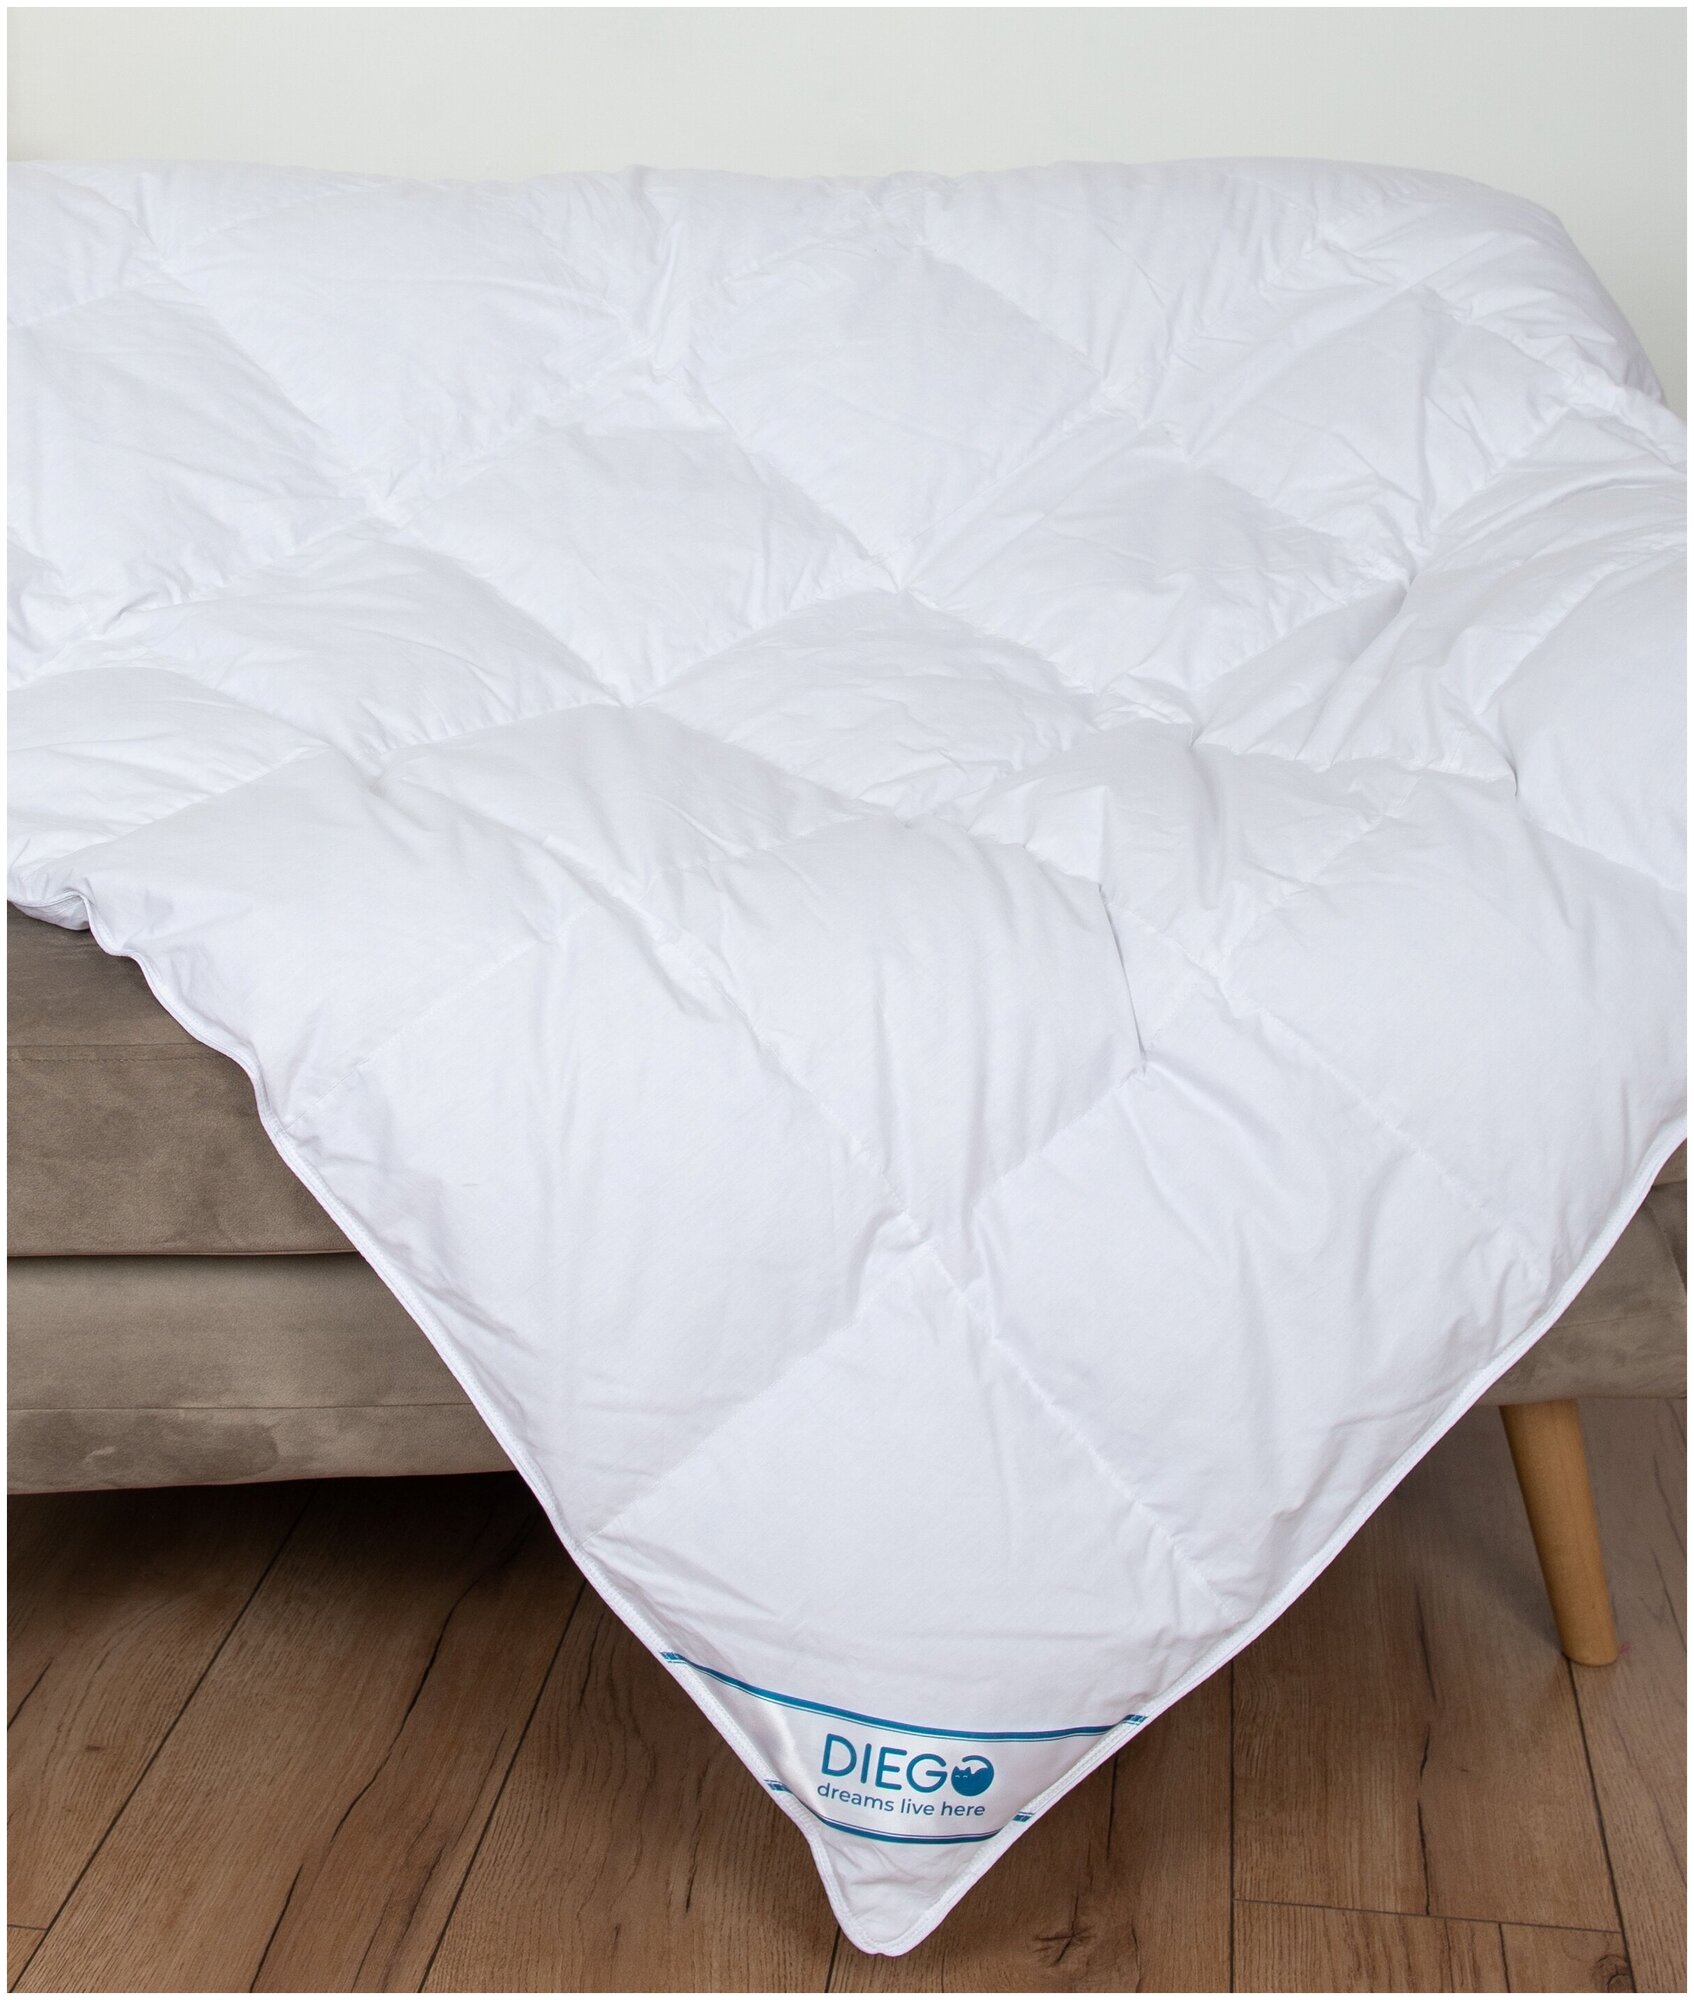 Одеяло пуховое Диана размер евро 2 спальное 200х200 см всесезонное, мягкое, пух гусь, теплое, легкое, для взрослого, текстиль для дома для уюта - фотография № 2